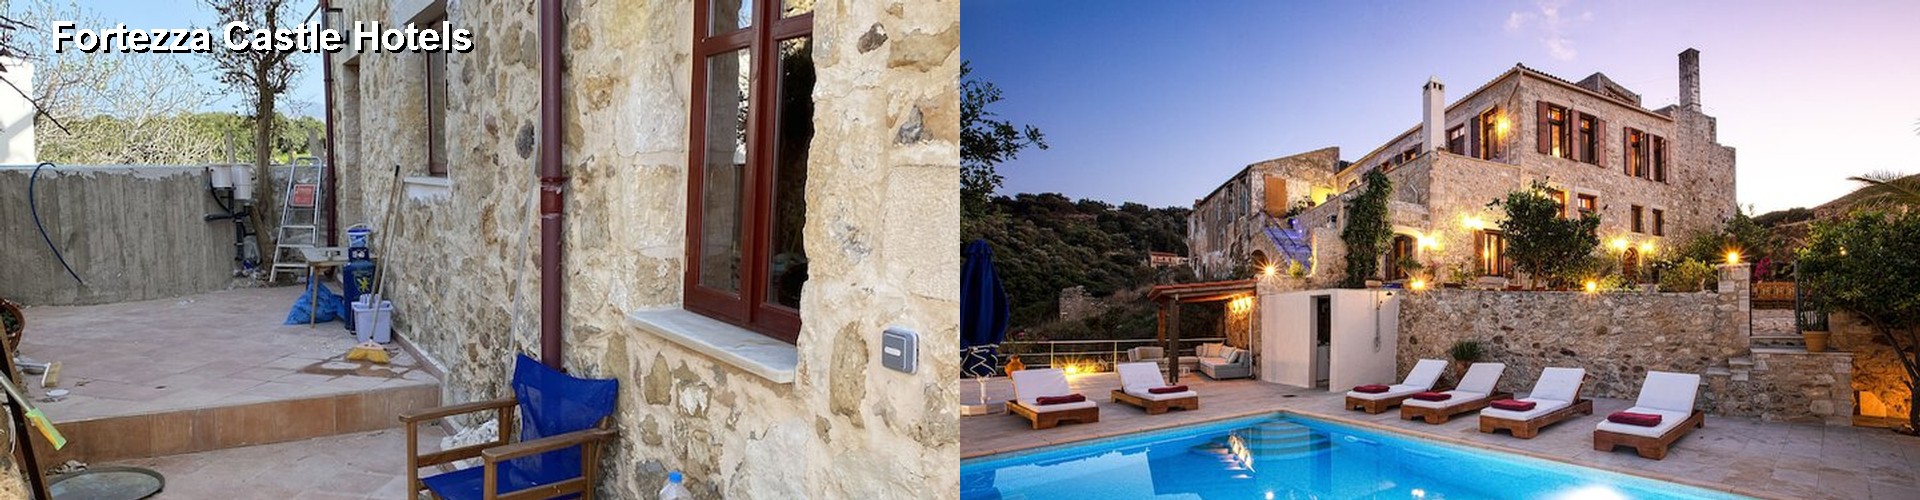 5 Best Hotels near Fortezza Castle